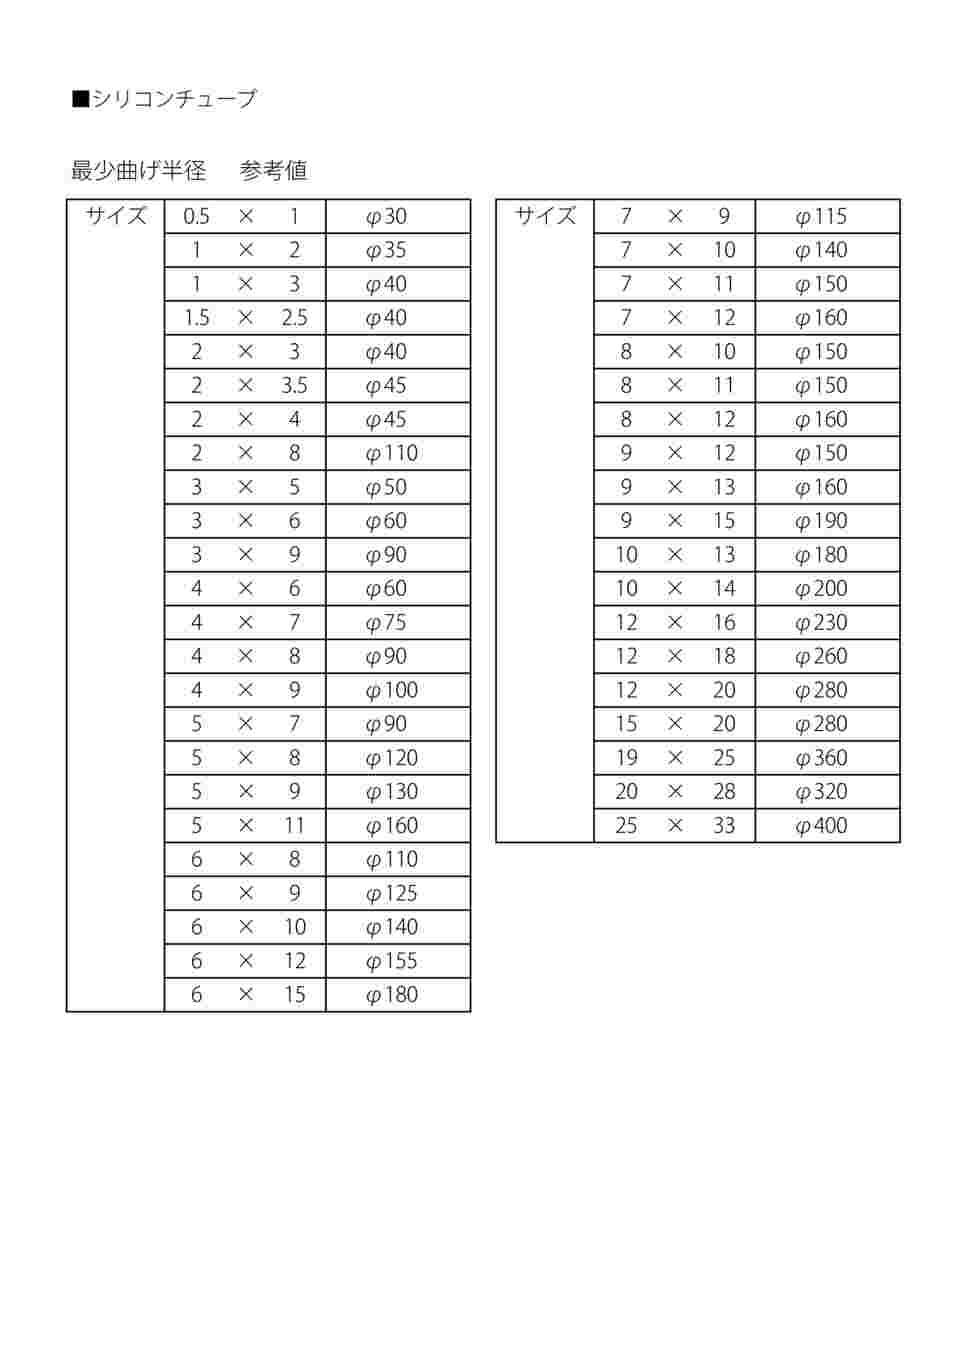 9-869-18 ラボラン(R)シリコンチューブ 8×11 1巻(11m) 【AXEL】 アズワン